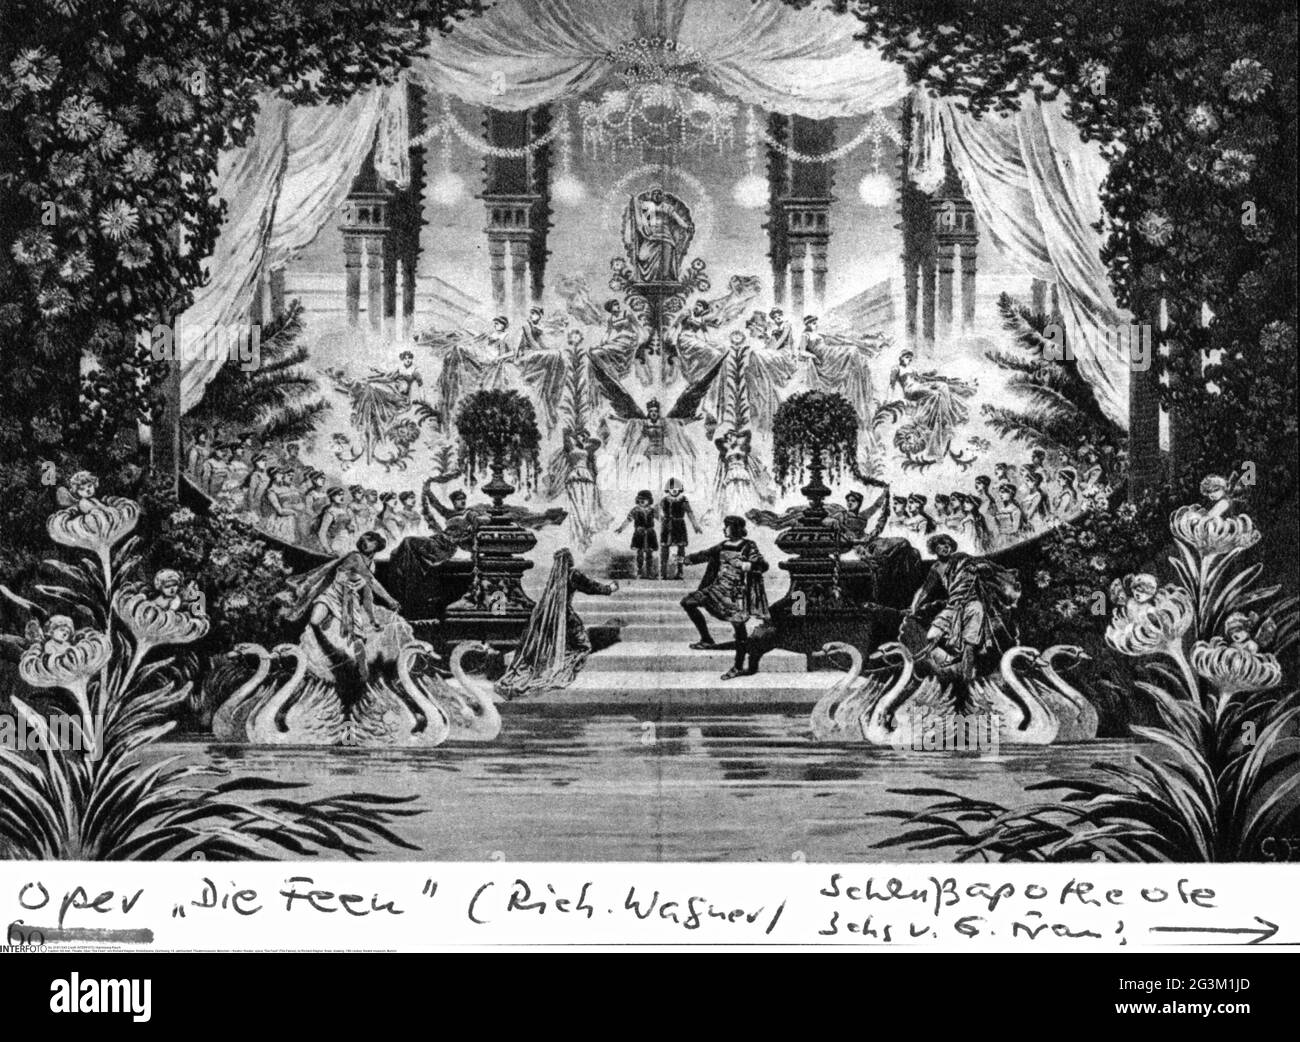 théâtre, opéra, 'Die Feen' (les Fées), par Richard Wagner, finale, dessin, 19e siècle, LES DROITS D'AUTEUR DE L'ARTISTE NE DOIVENT PAS ÊTRE EFFACÉS Banque D'Images